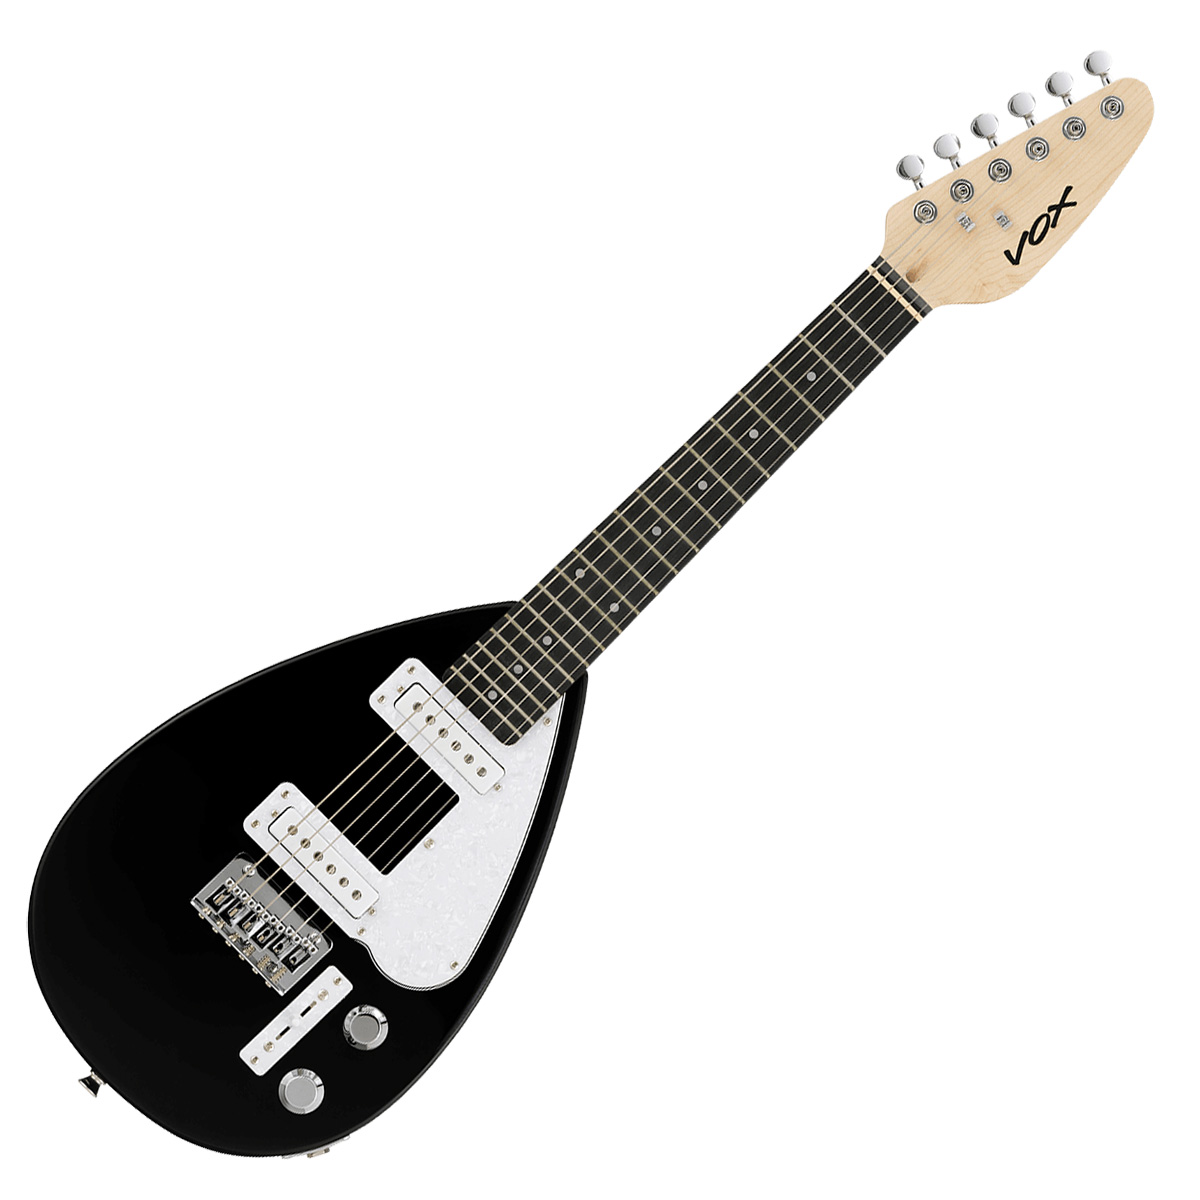 VOX ボックス MK3 MINI ミニギター エレキギター トラベルギター ショートスケール ティアドロップ型